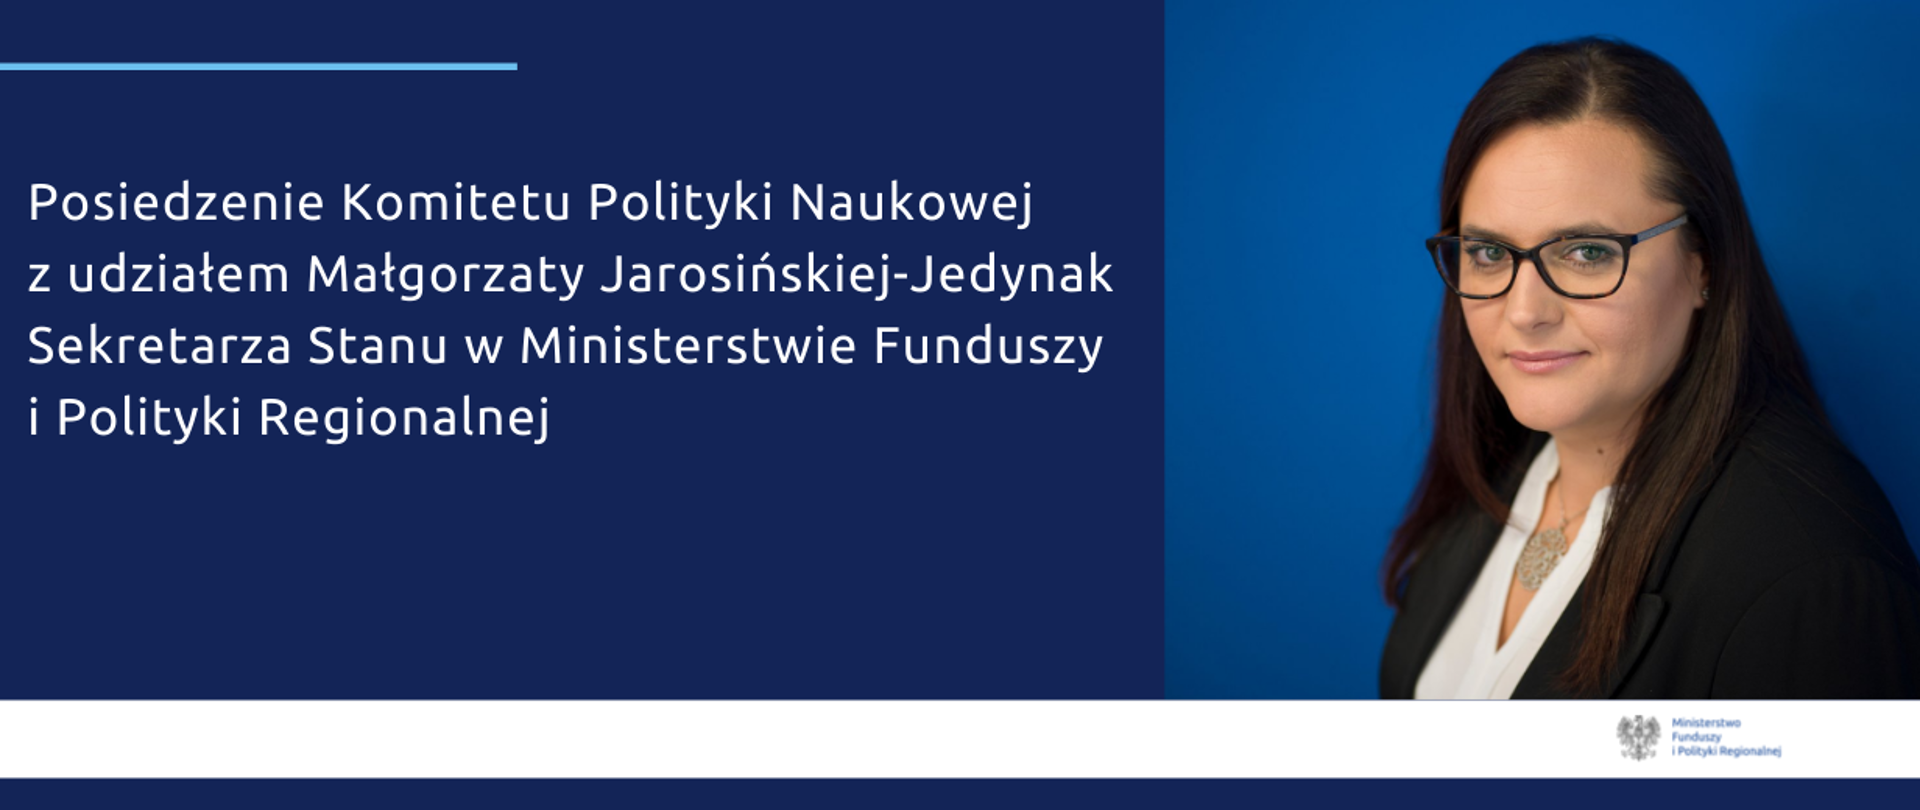 Grafika przedstawia zdjęcie z podpisem: Posiedzenie Komitetu Polityki Naukowej z udziałem Małgorzaty Jarosińskiej-Jedynak Sekretarza Stanu w Ministerstwie Funduszy i Polityki Regionalnej.